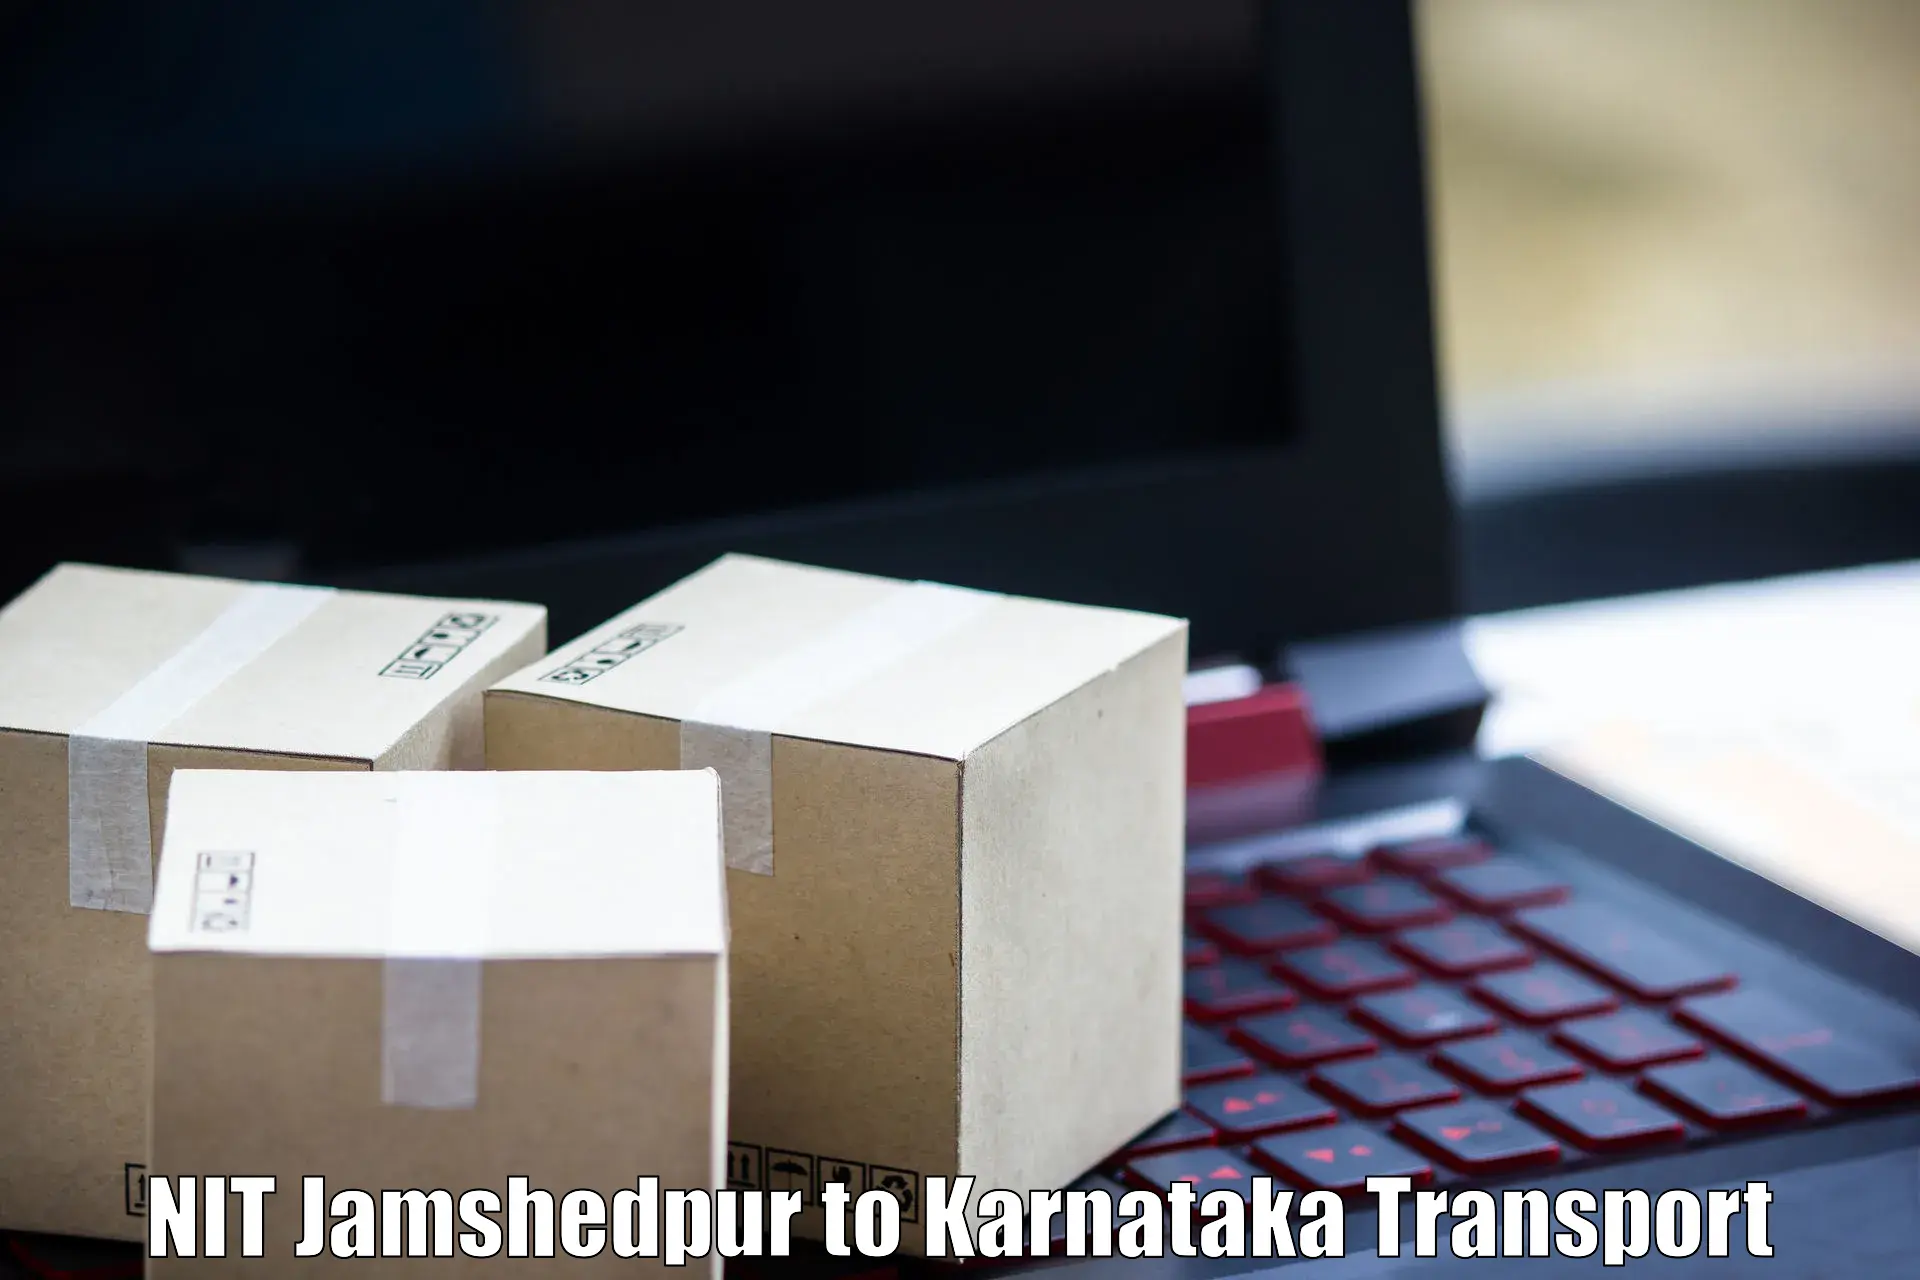 Luggage transport services NIT Jamshedpur to Karnataka